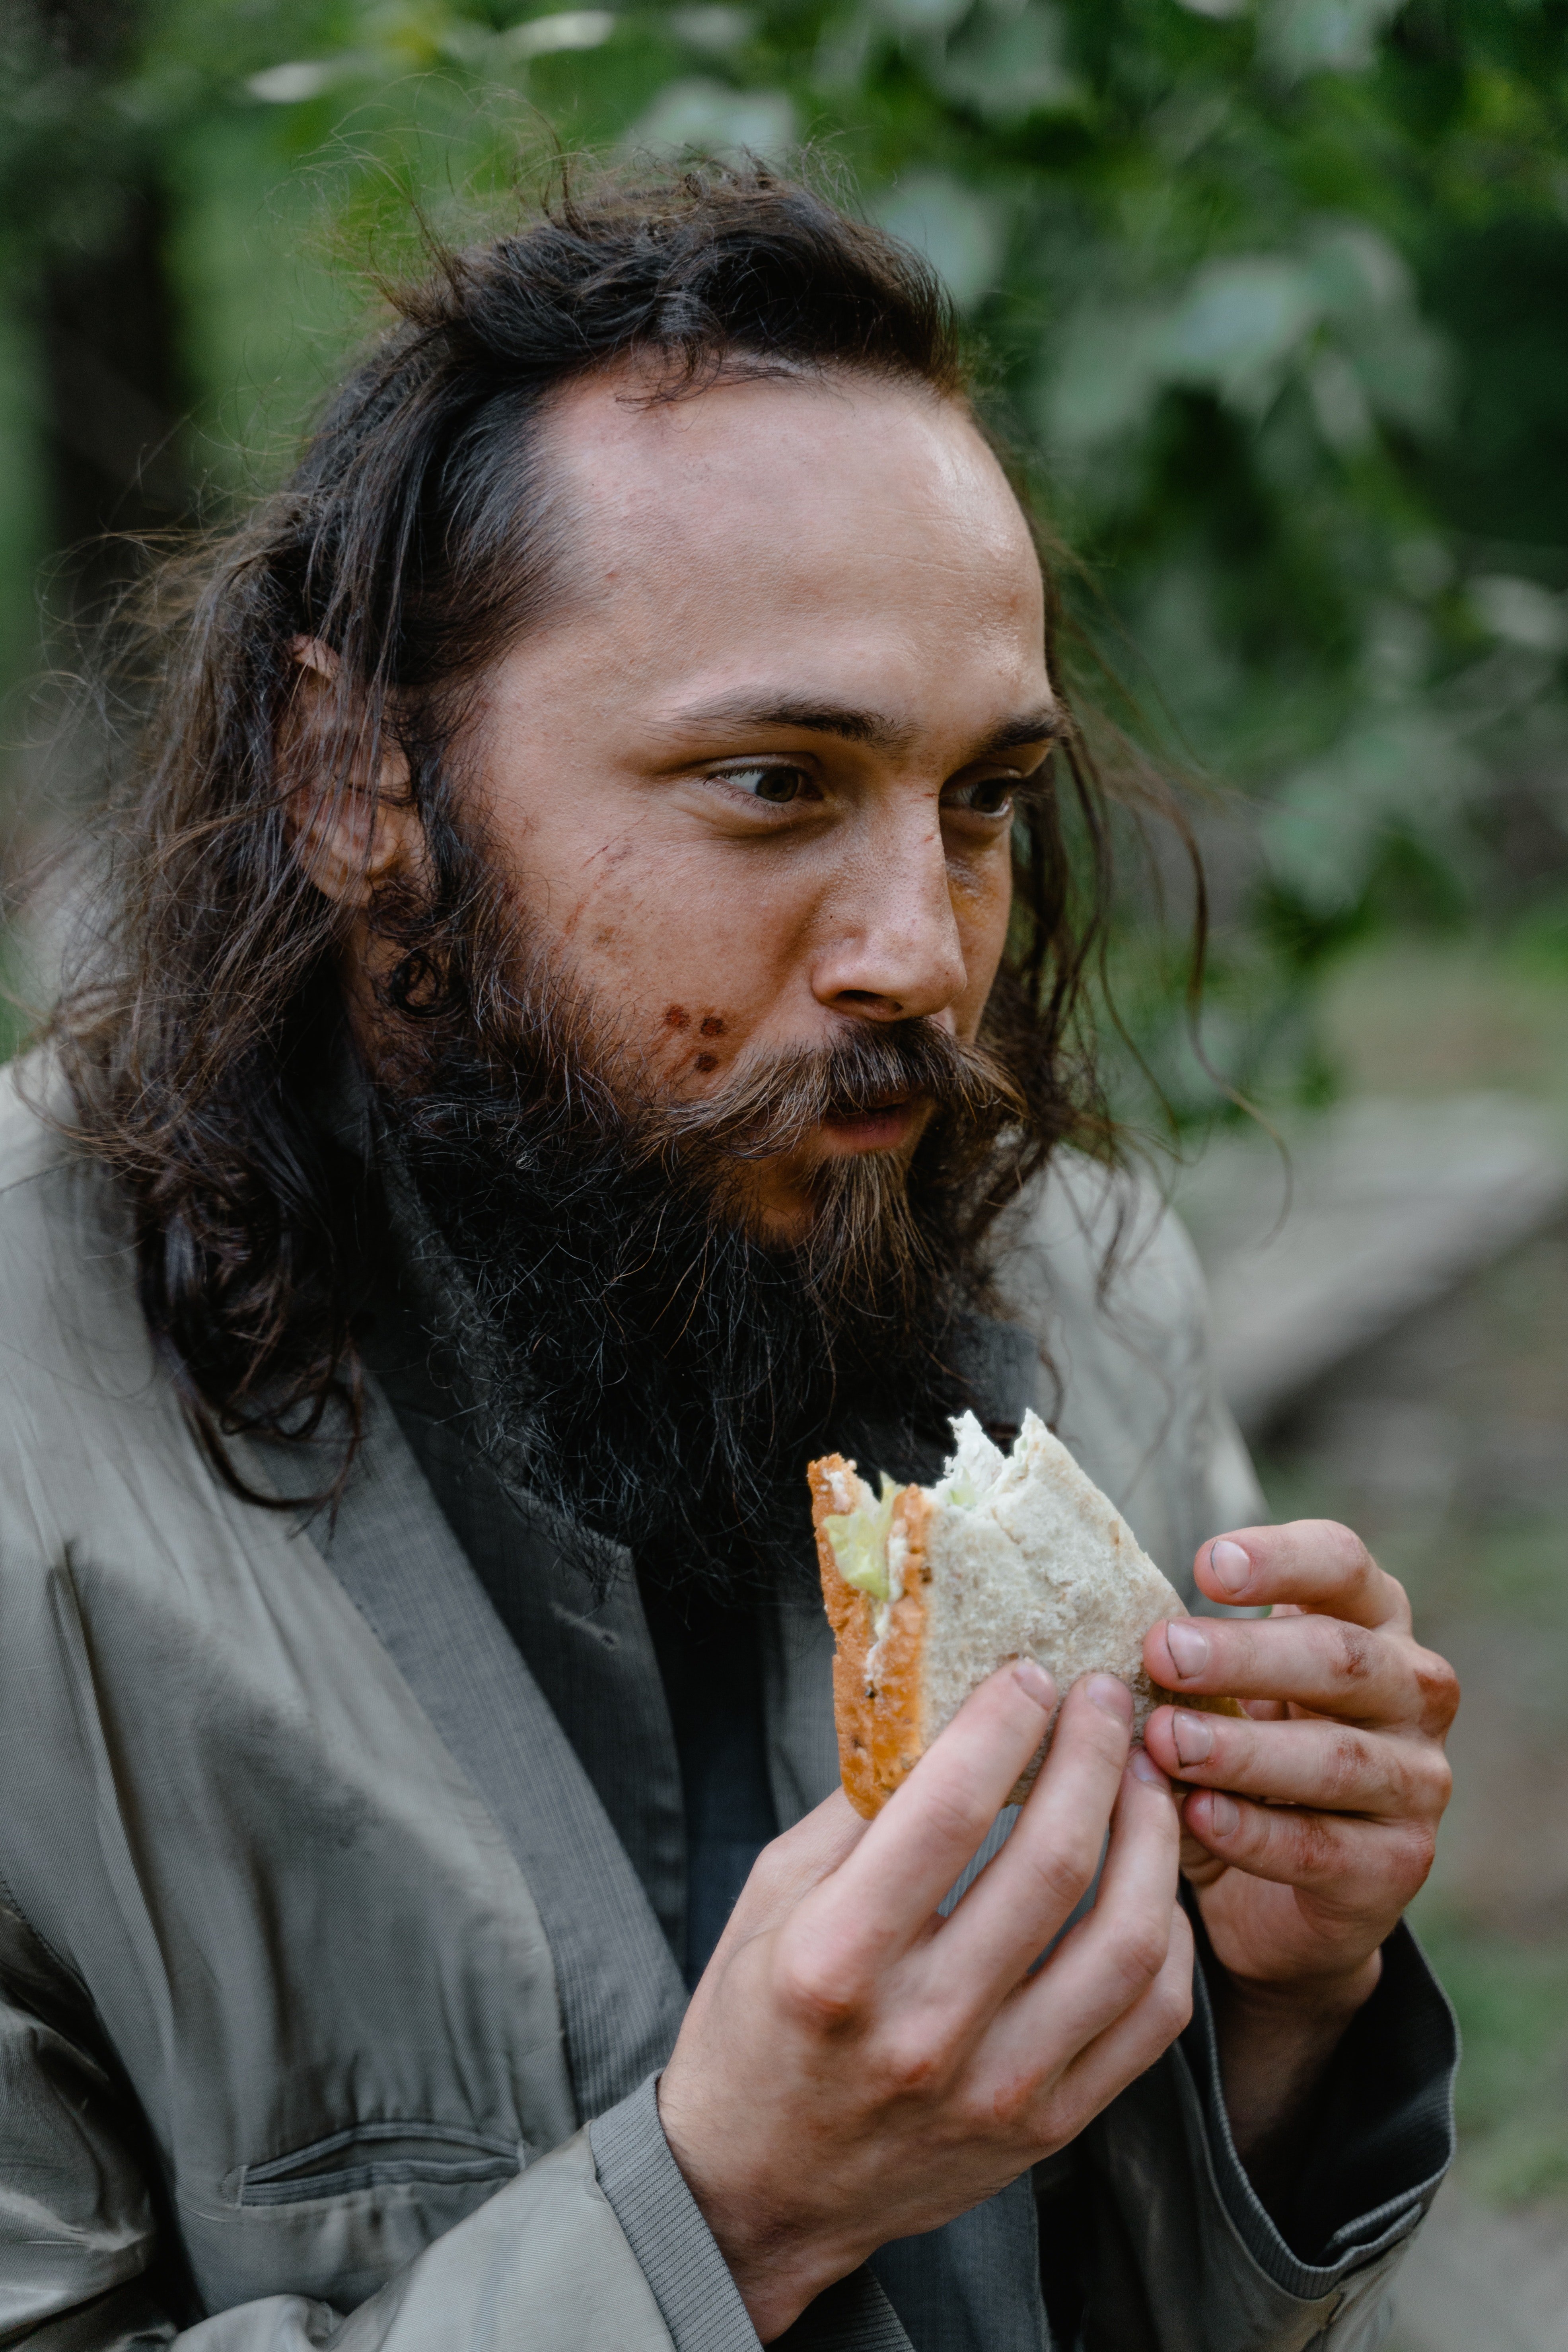 Un vagabundo se come un sandwich. | Foto: Pexels